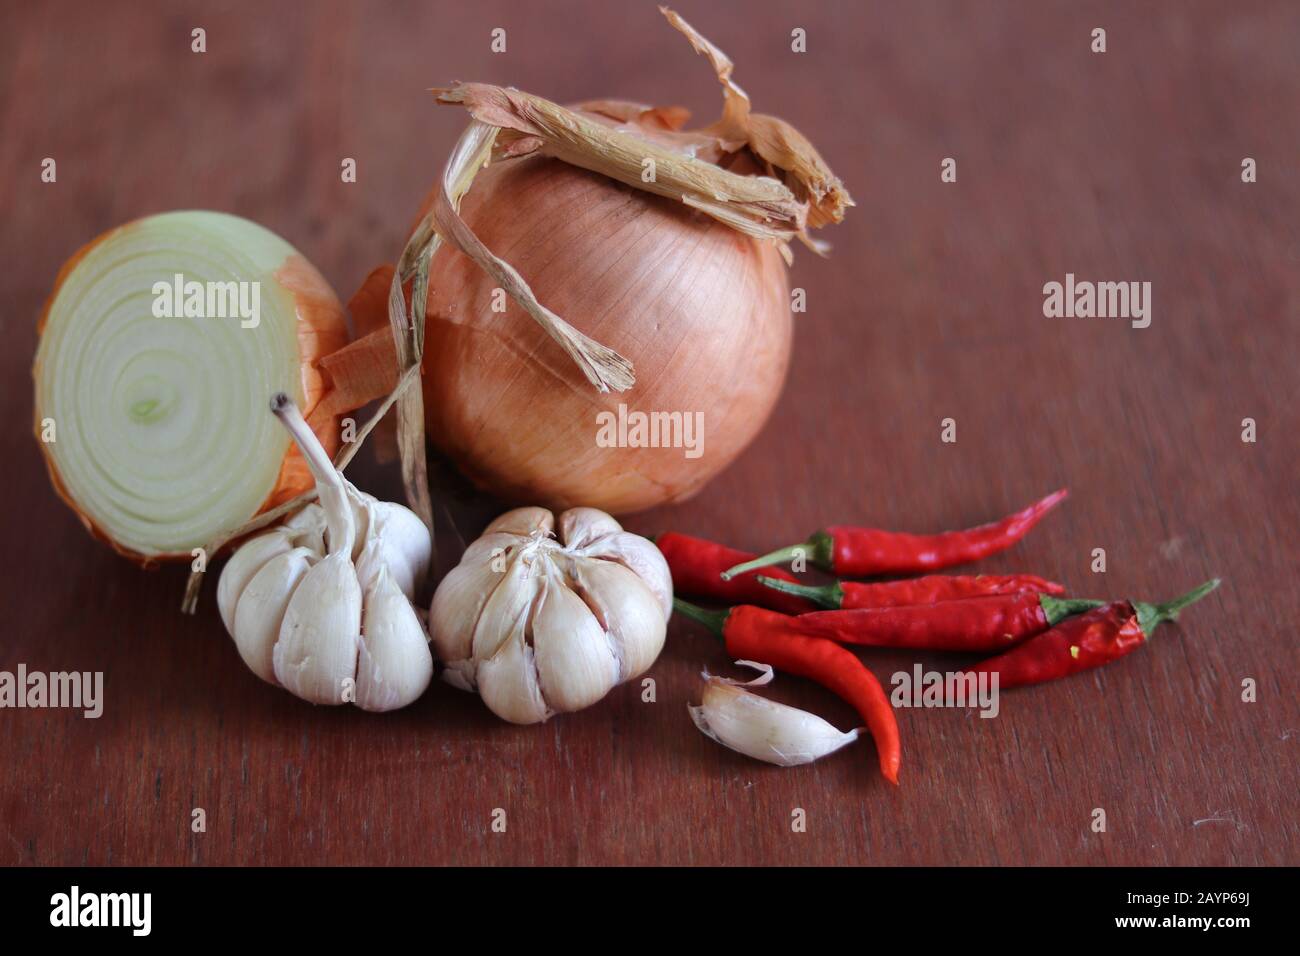 Zwiebel, Knoblauch und rote Chilis vor Holzhintergrund, um das Konzept der Gastronomie, Küche und Lebensmittelindustrie zu zeigen Stockfoto